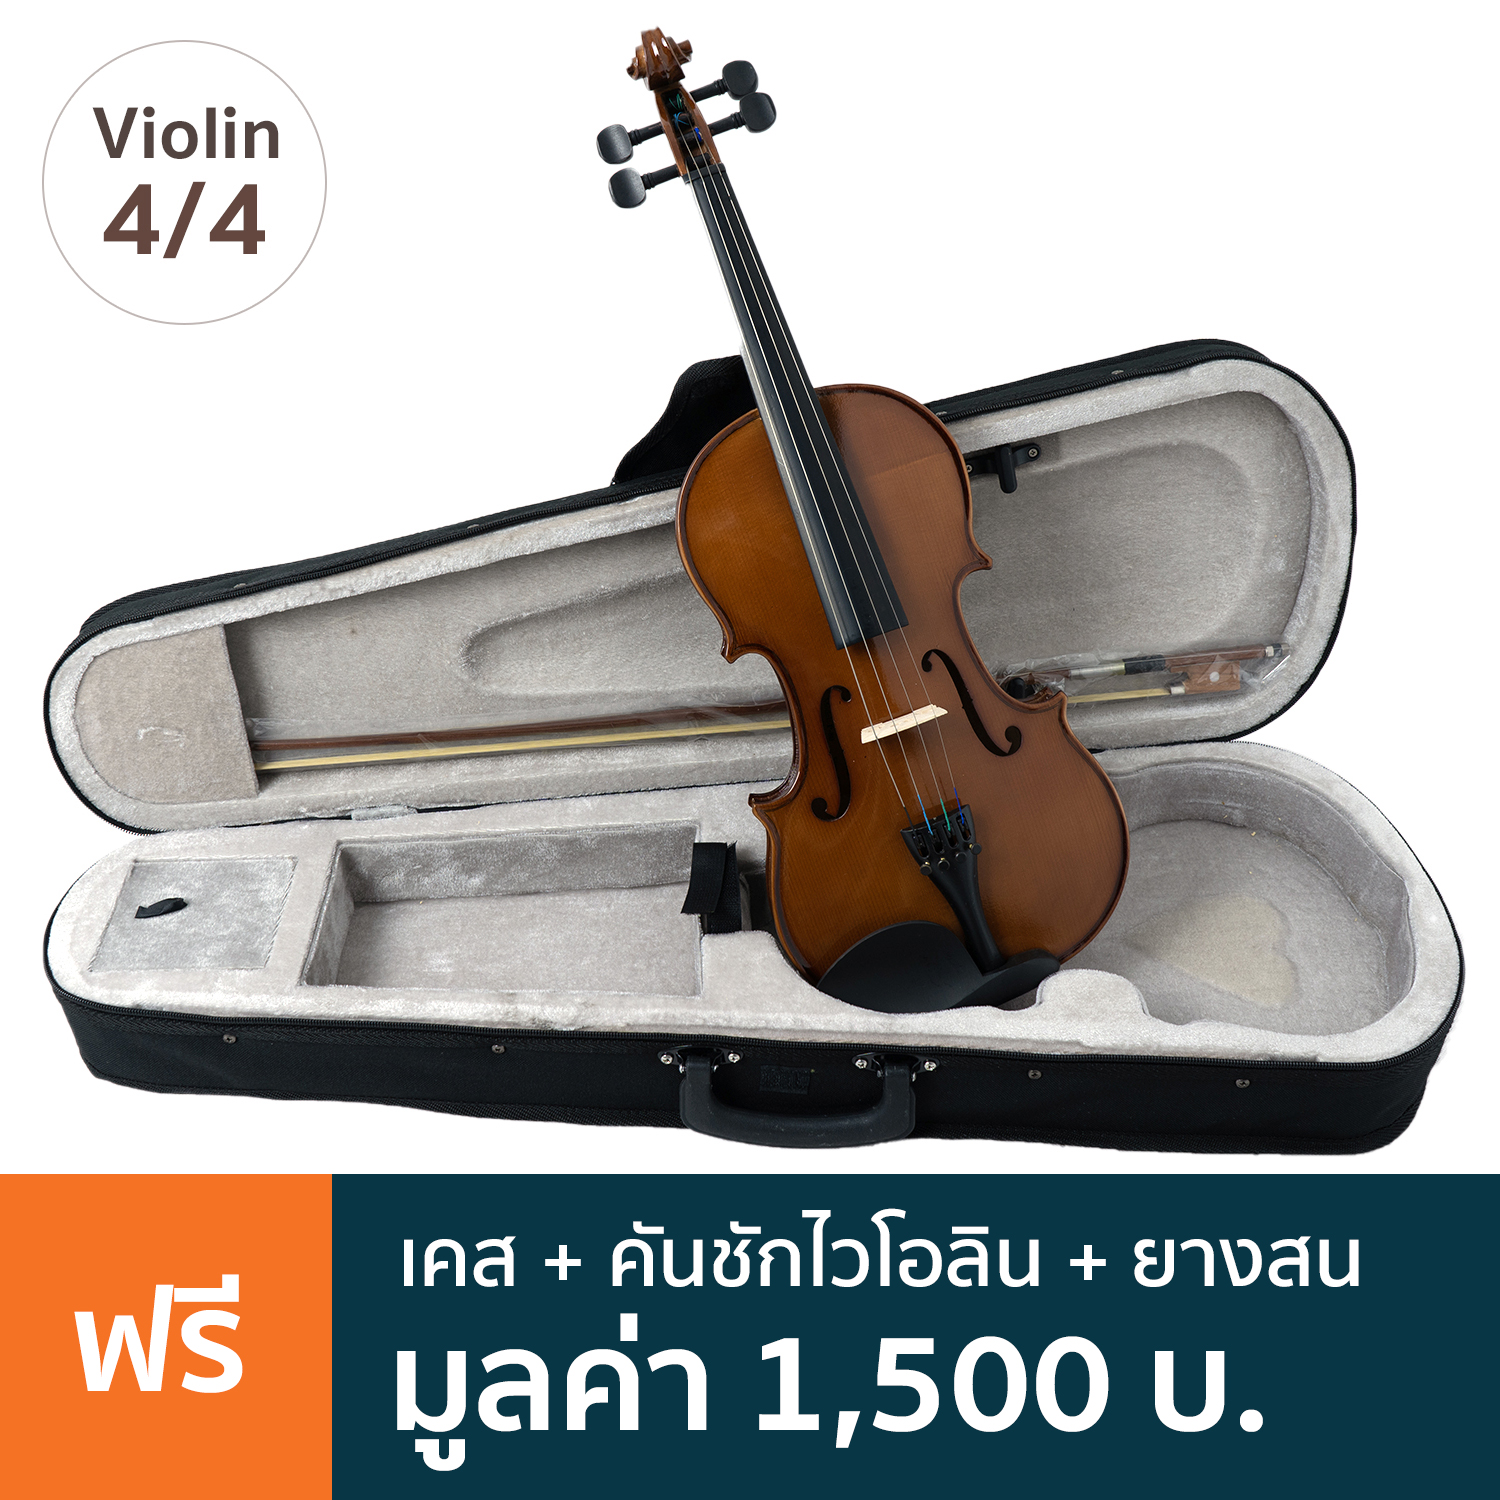 Prima P-80 Violin ไวโอลิน 4/4 ไม้ลามิเนต เคลือบเงา + แถมฟรีซอฟต์เคส & คันชัก & ยางสน